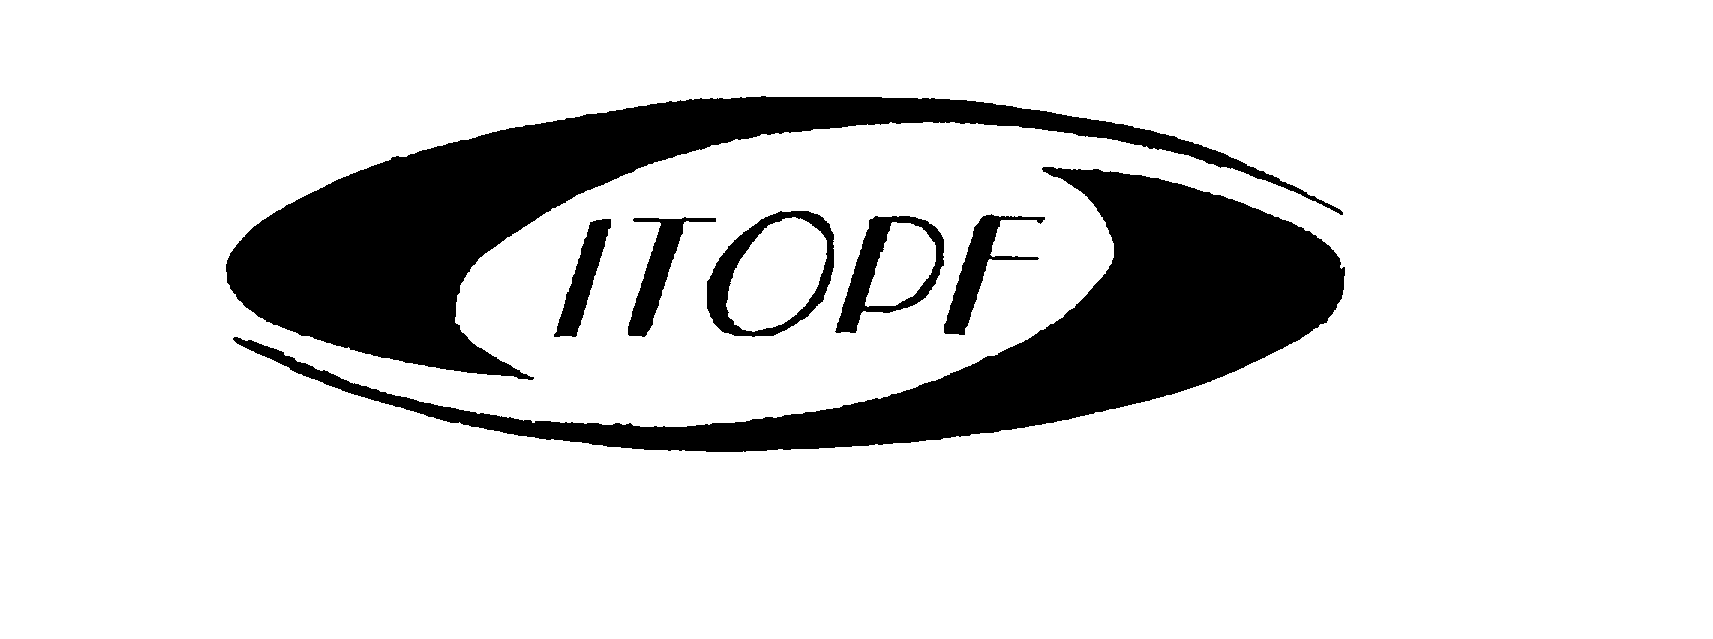 ITOPF